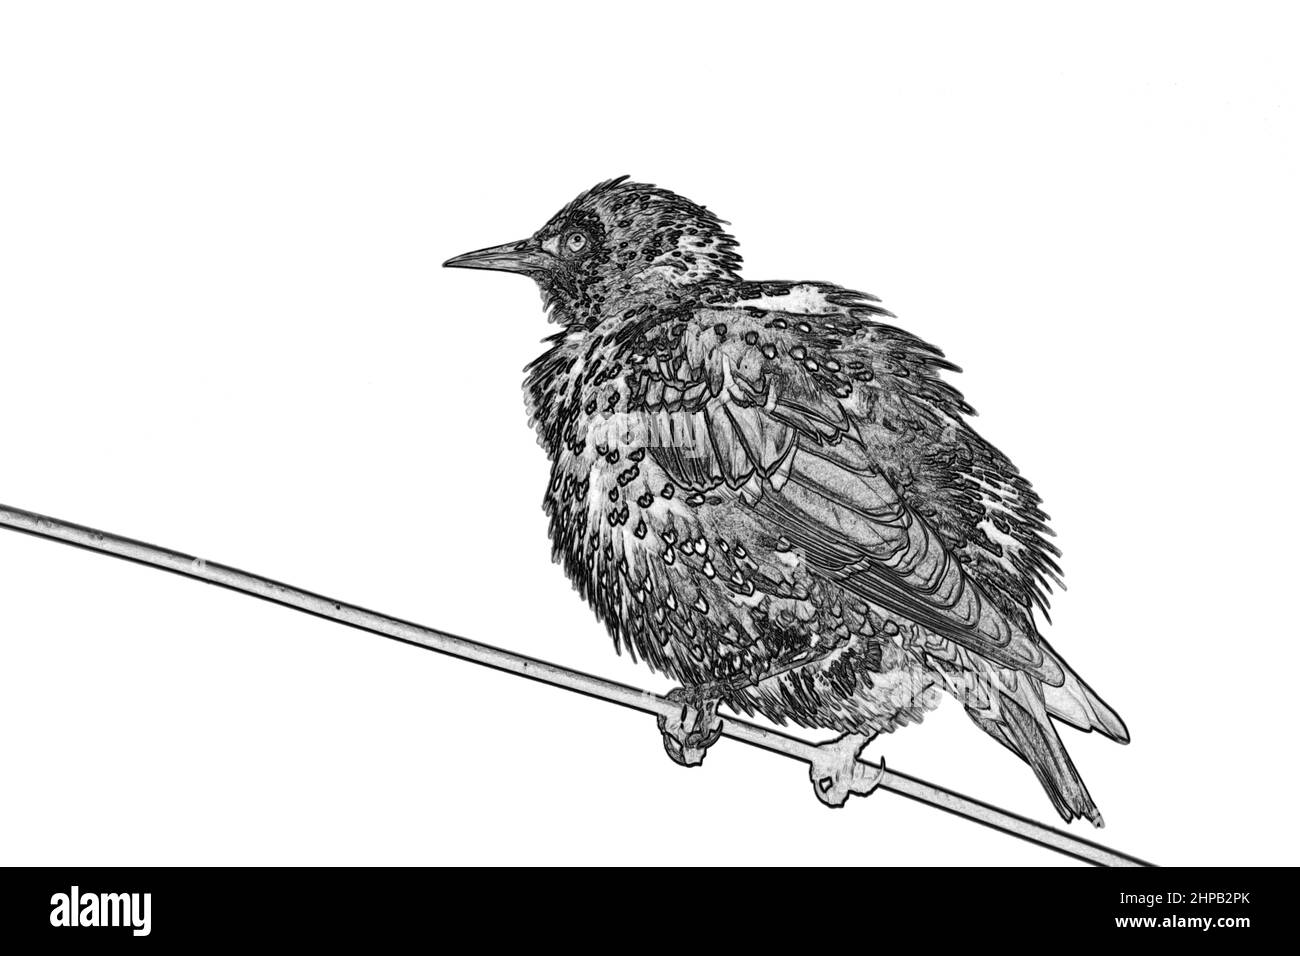 Lo starling comune (Sturnus vulgaris), noto anche come la starling europea o nelle isole britanniche solo la starling, è un uccello passerino di medie dimensioni Foto Stock